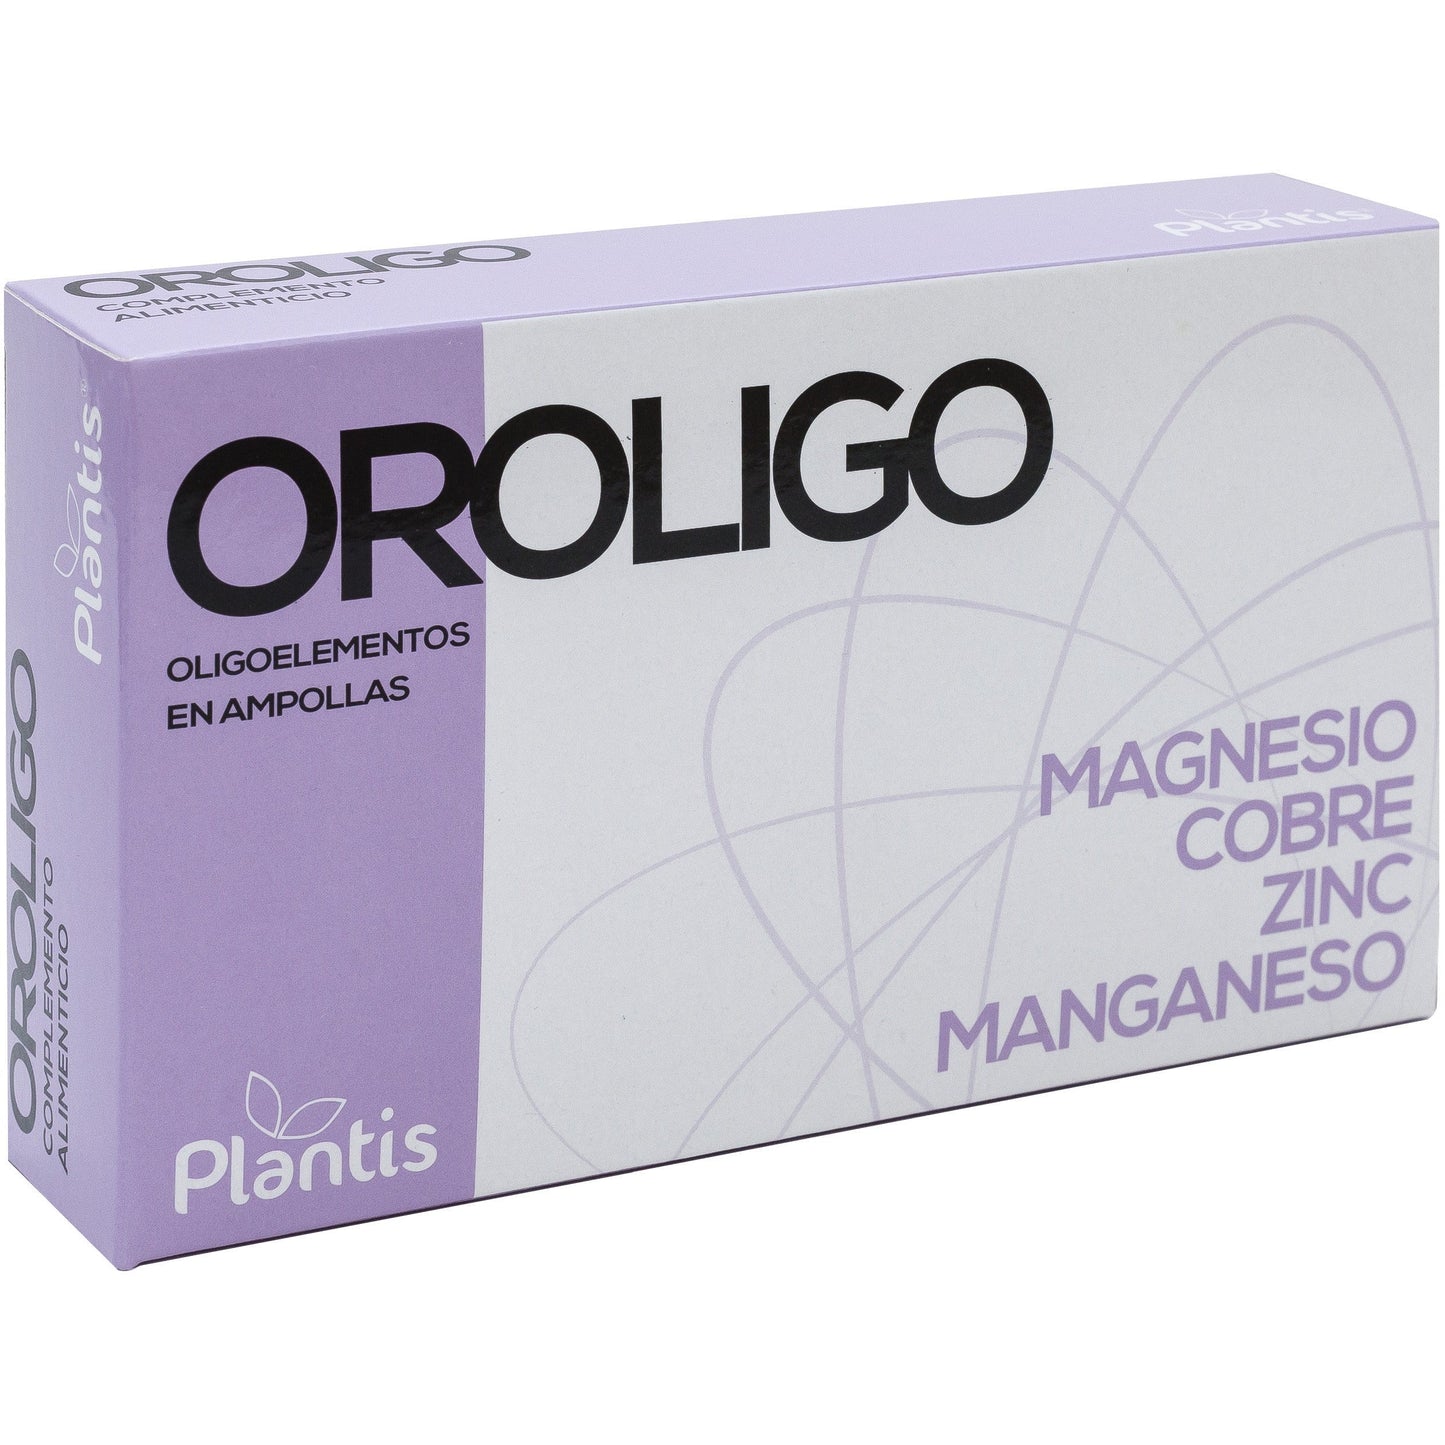 Oroligo 20 ampollas | Plantis - Dietetica Ferrer